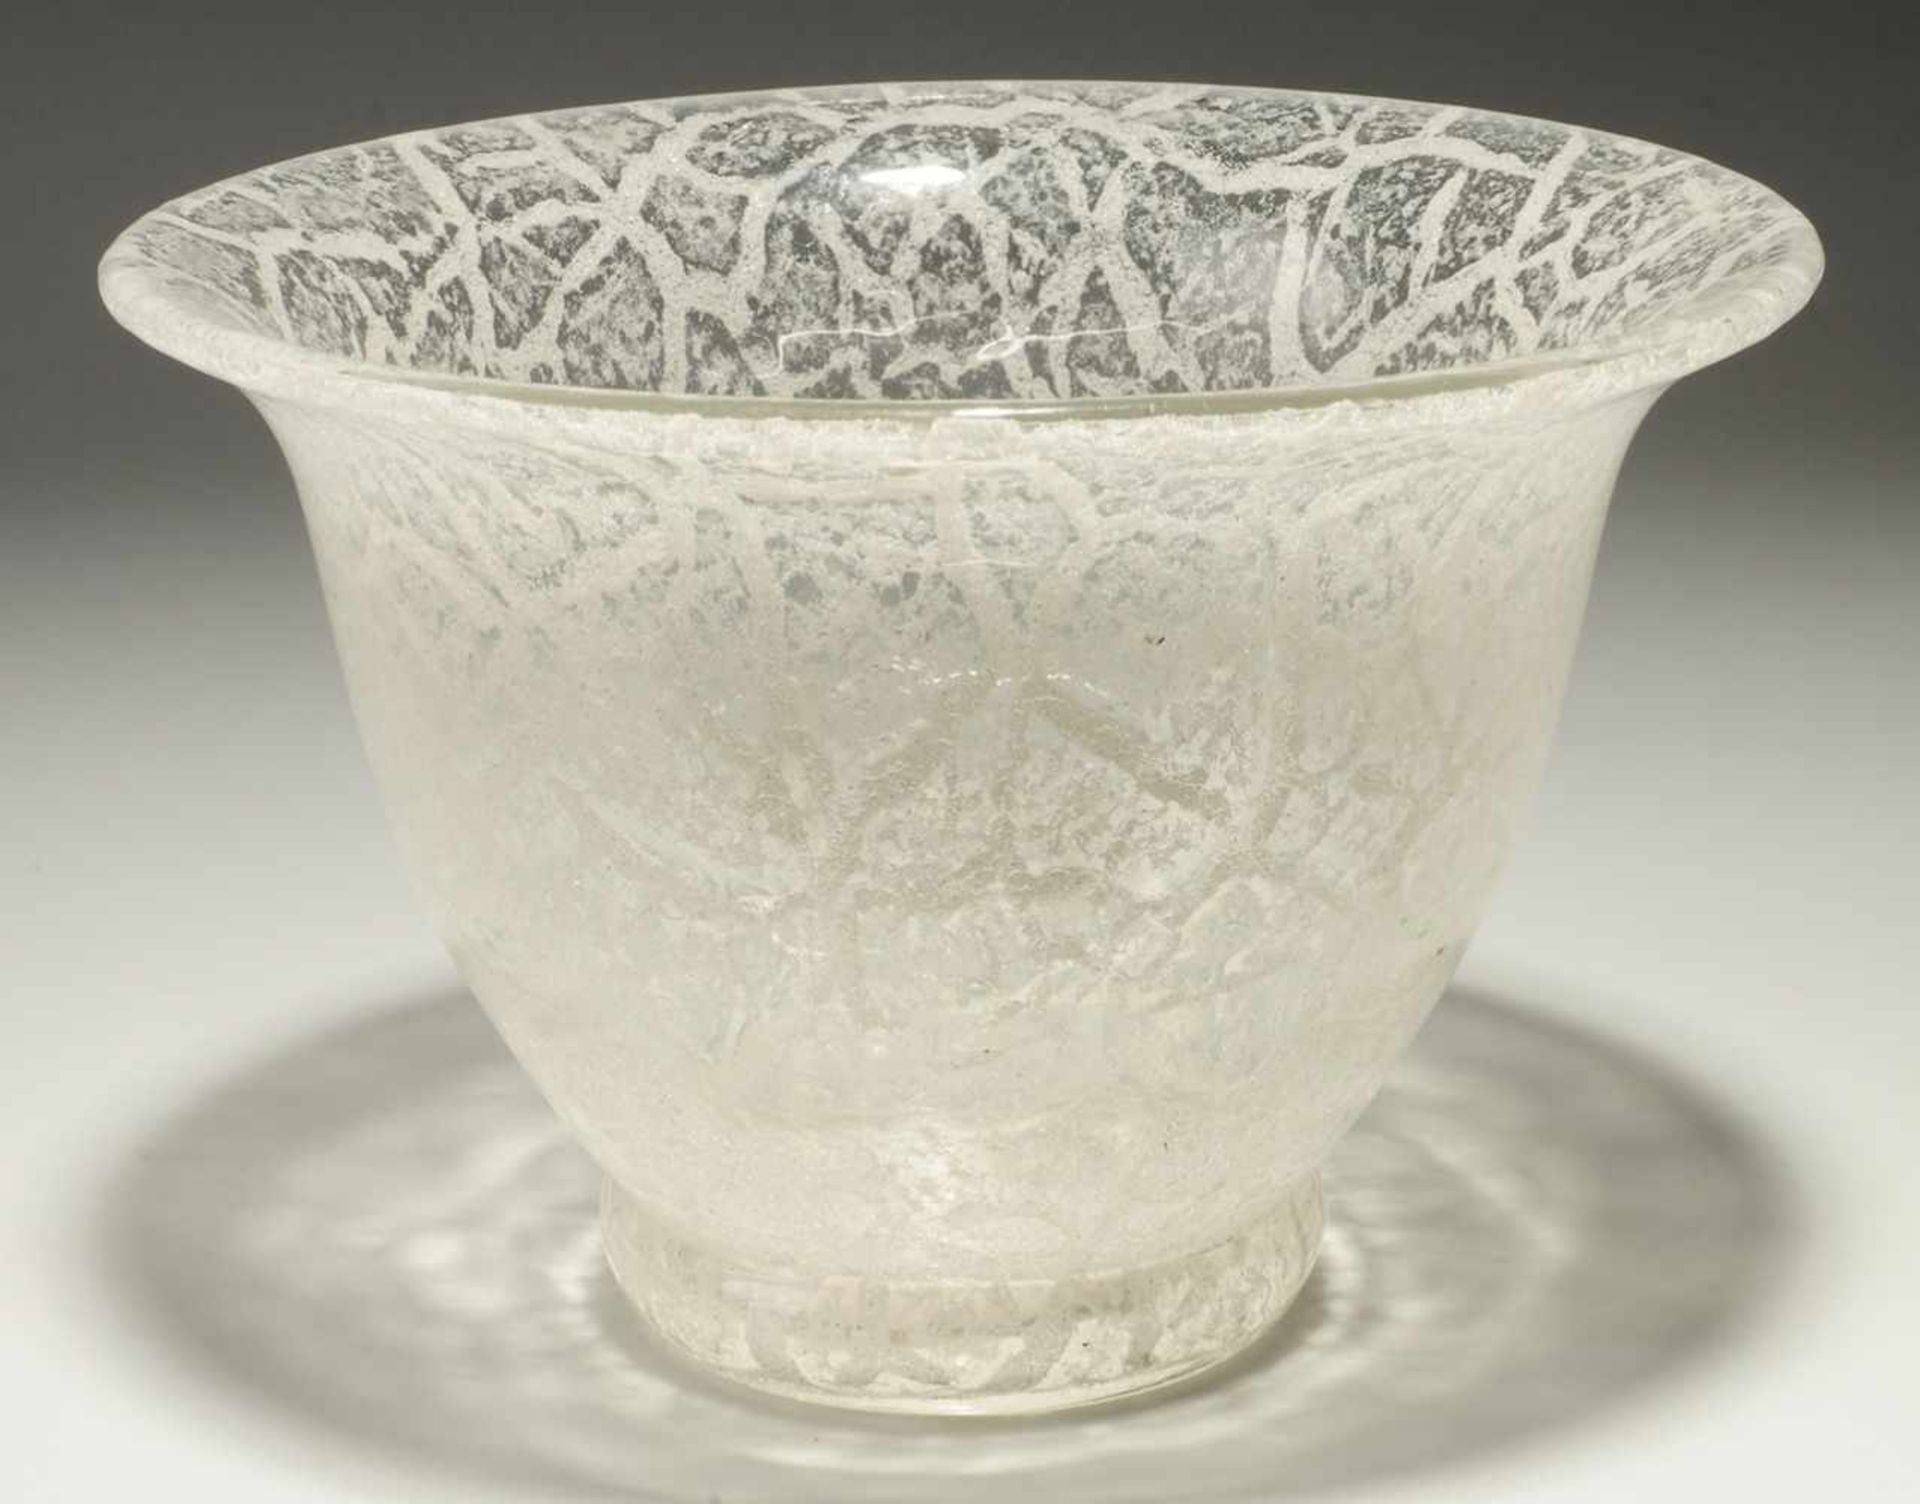 Vase Farbloses Glas. Formgeblasen. Zwischen den Schichten weißes Emailkrakelee. H. 13,5 cm. (32)